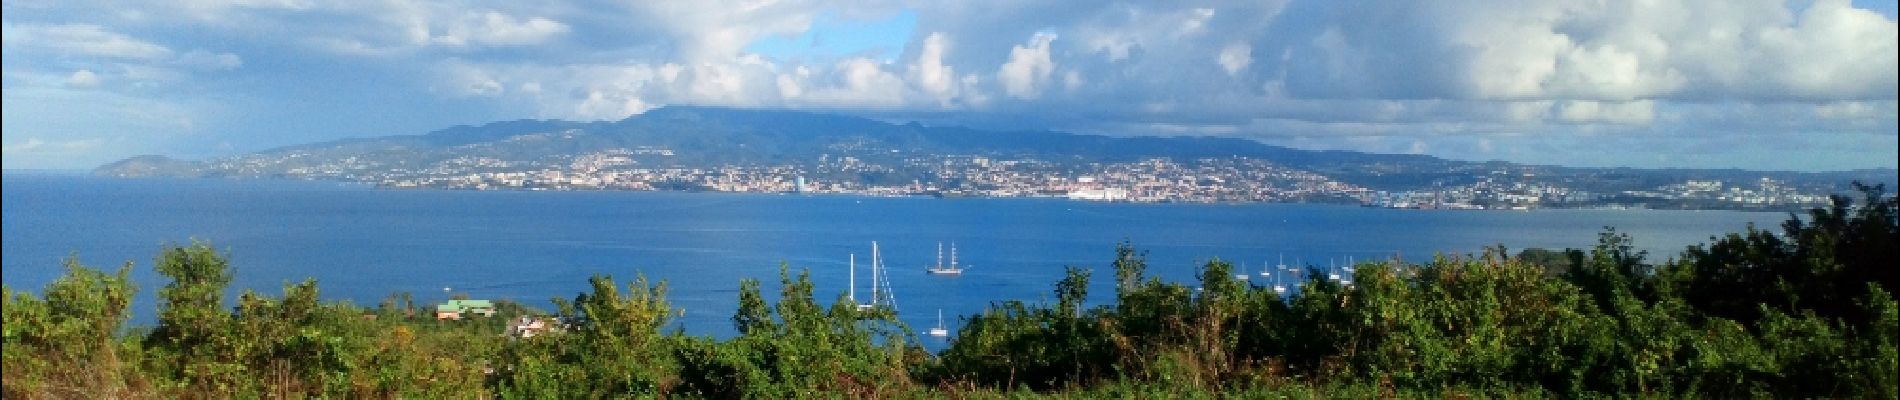 POI Les Trois-Îlets - Point la bait de fort-de france  - Photo